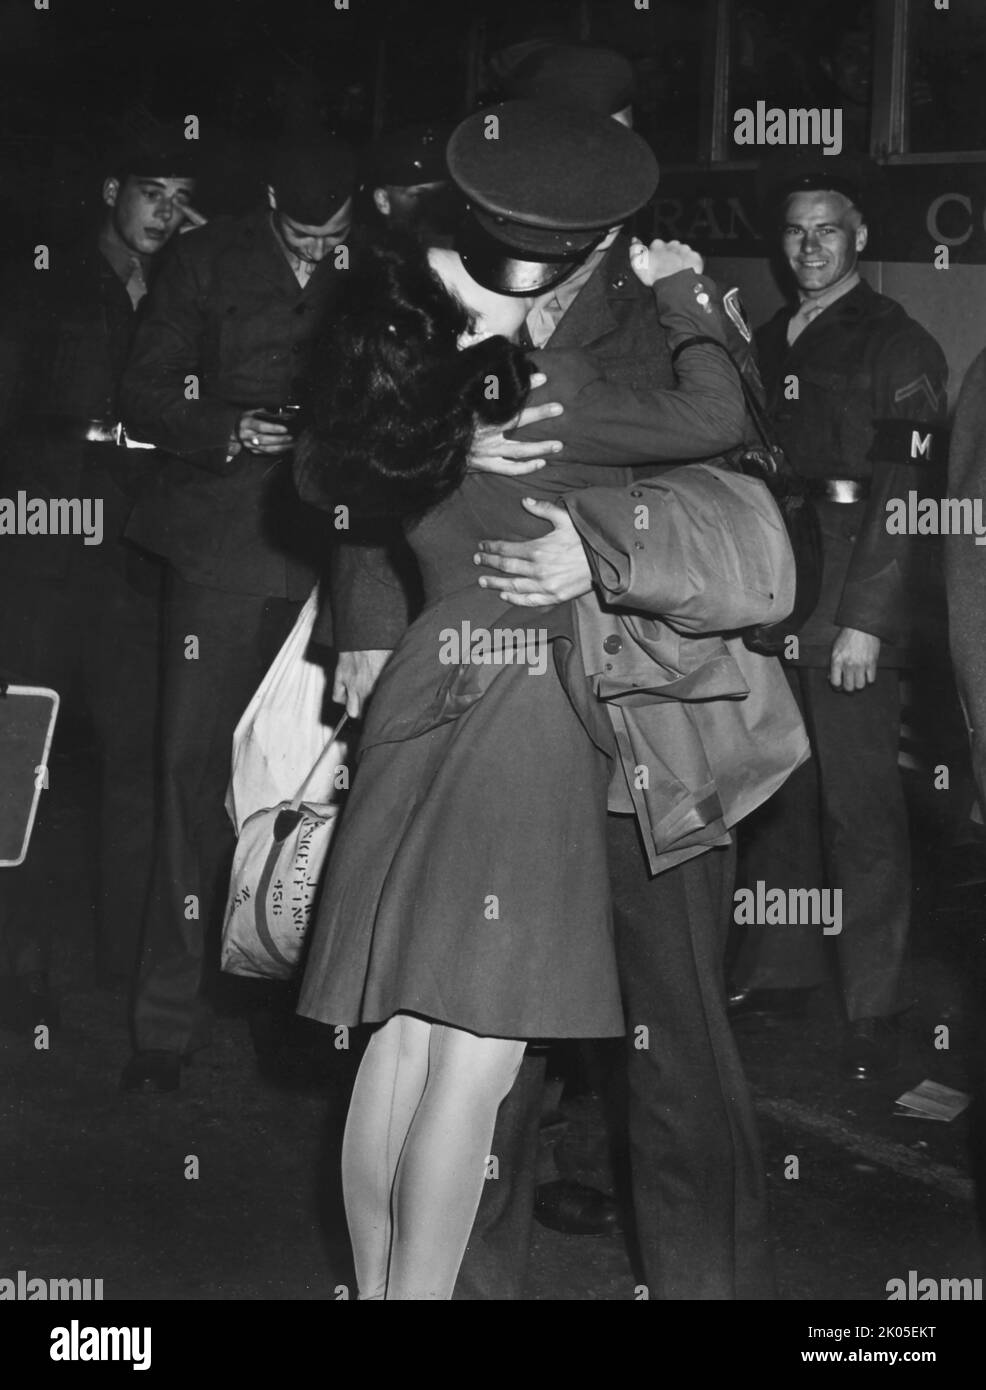 Un serviceman statunitense di ritorno alla fine della seconda guerra mondiale bacia la moglie, ca. 1945. Foto Stock